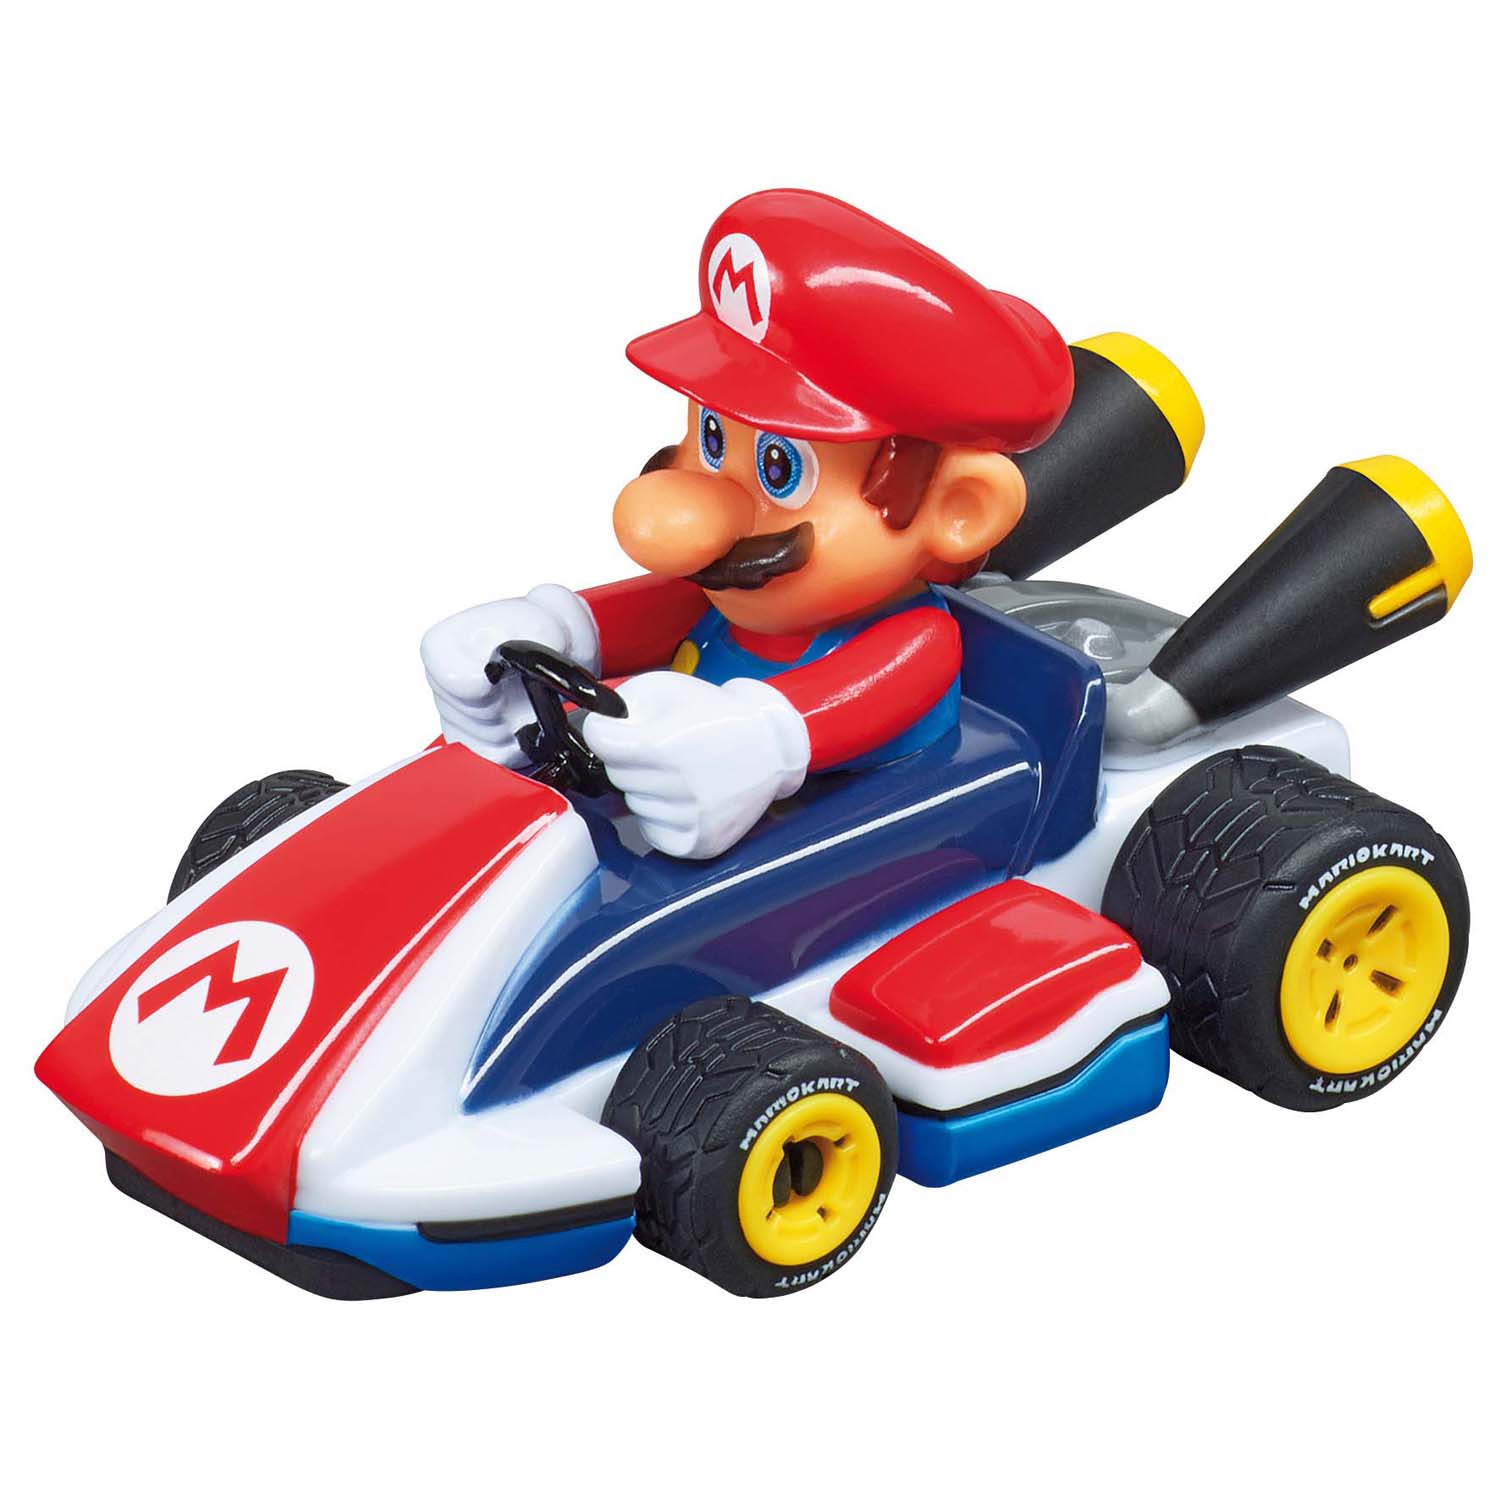 Super Mario Racecourse Mariokart 2.4m